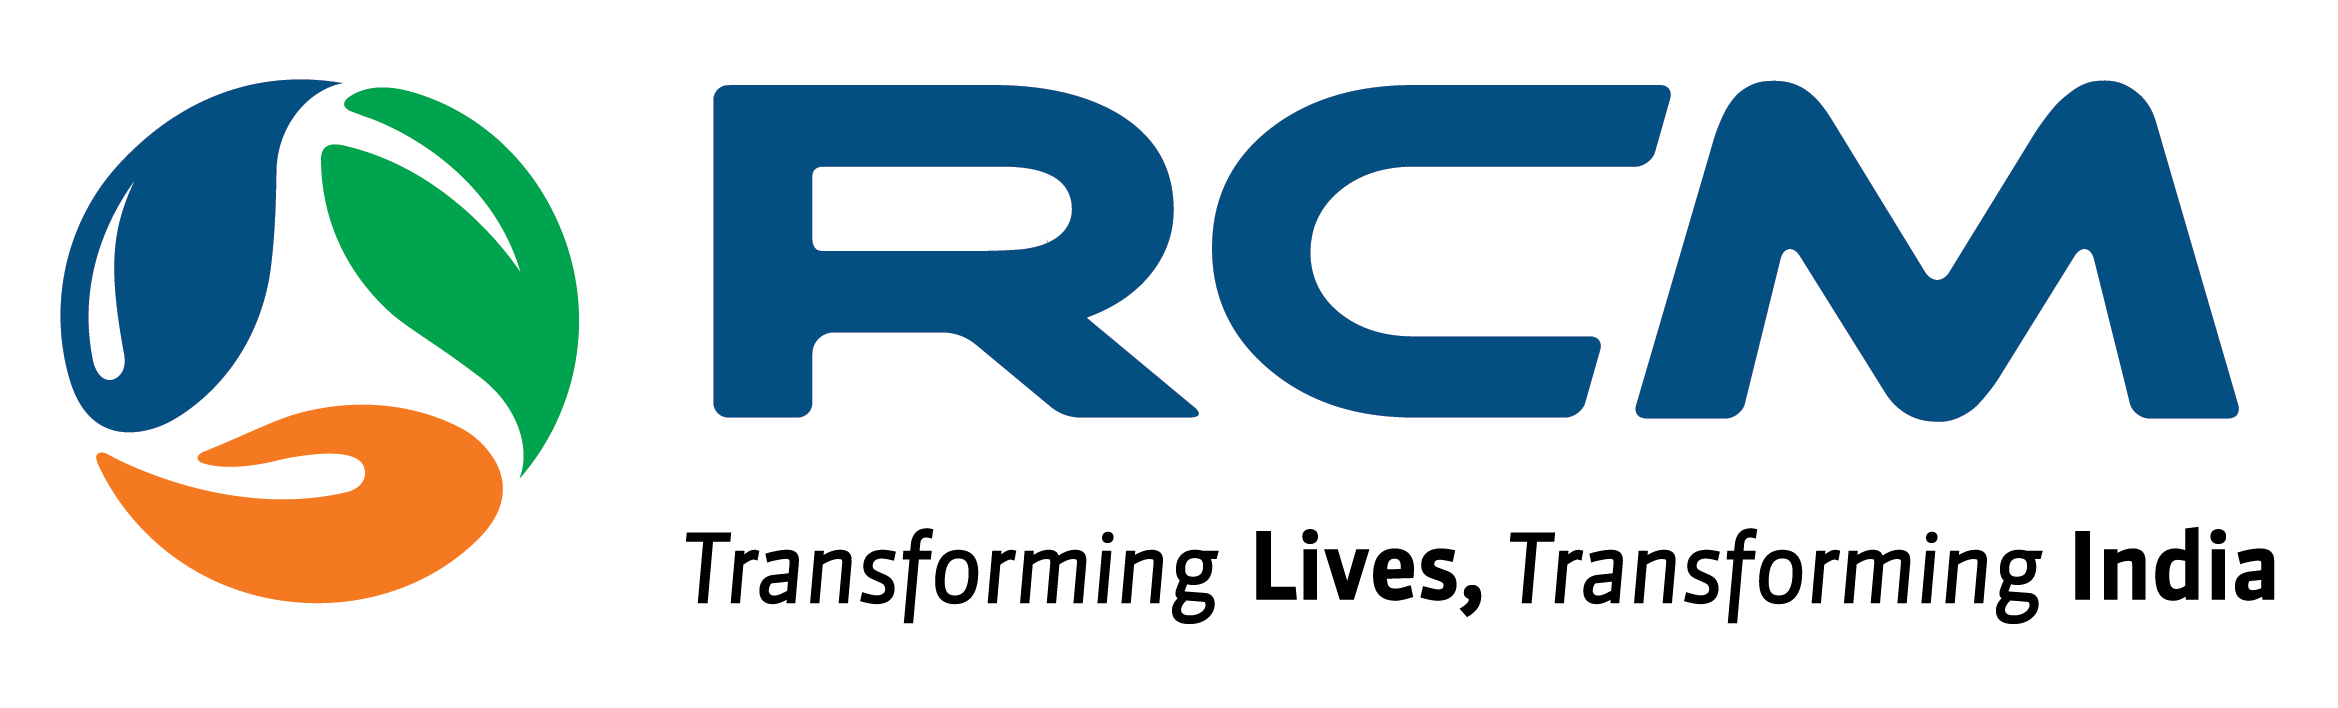 RCM Automotive - Logo Construction - YouTube